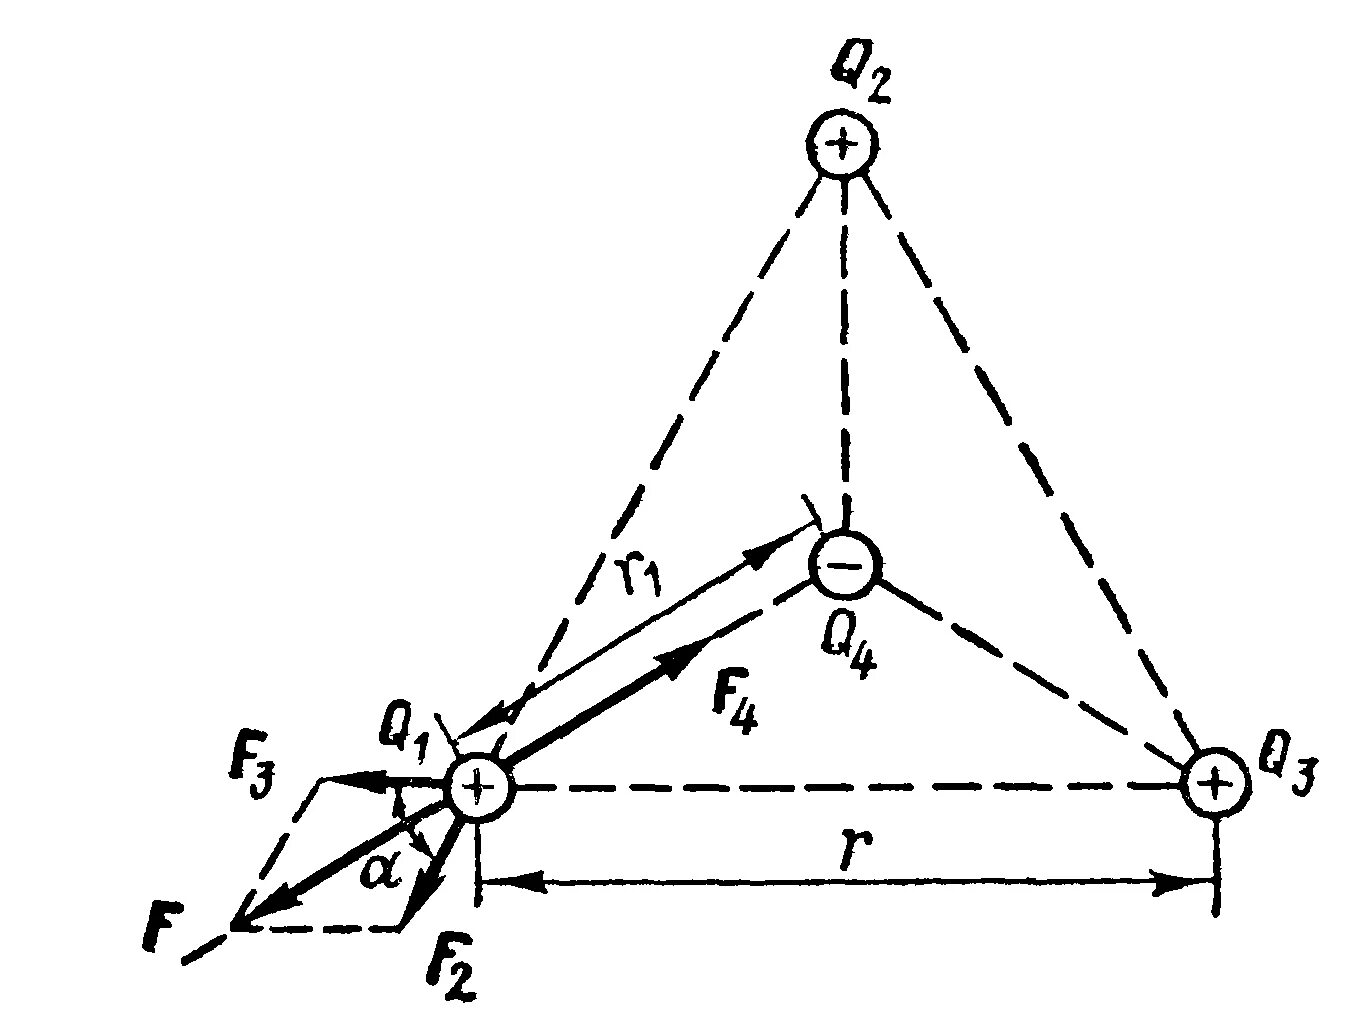 Три заряда расположены в Вершинах треугольника. На Вершинах равностороннего треугольника расположены заряды. Три заряда расположены в Вершинах равностороннего треугольника. Заряды в Вершинах треугольника заряд в центре.